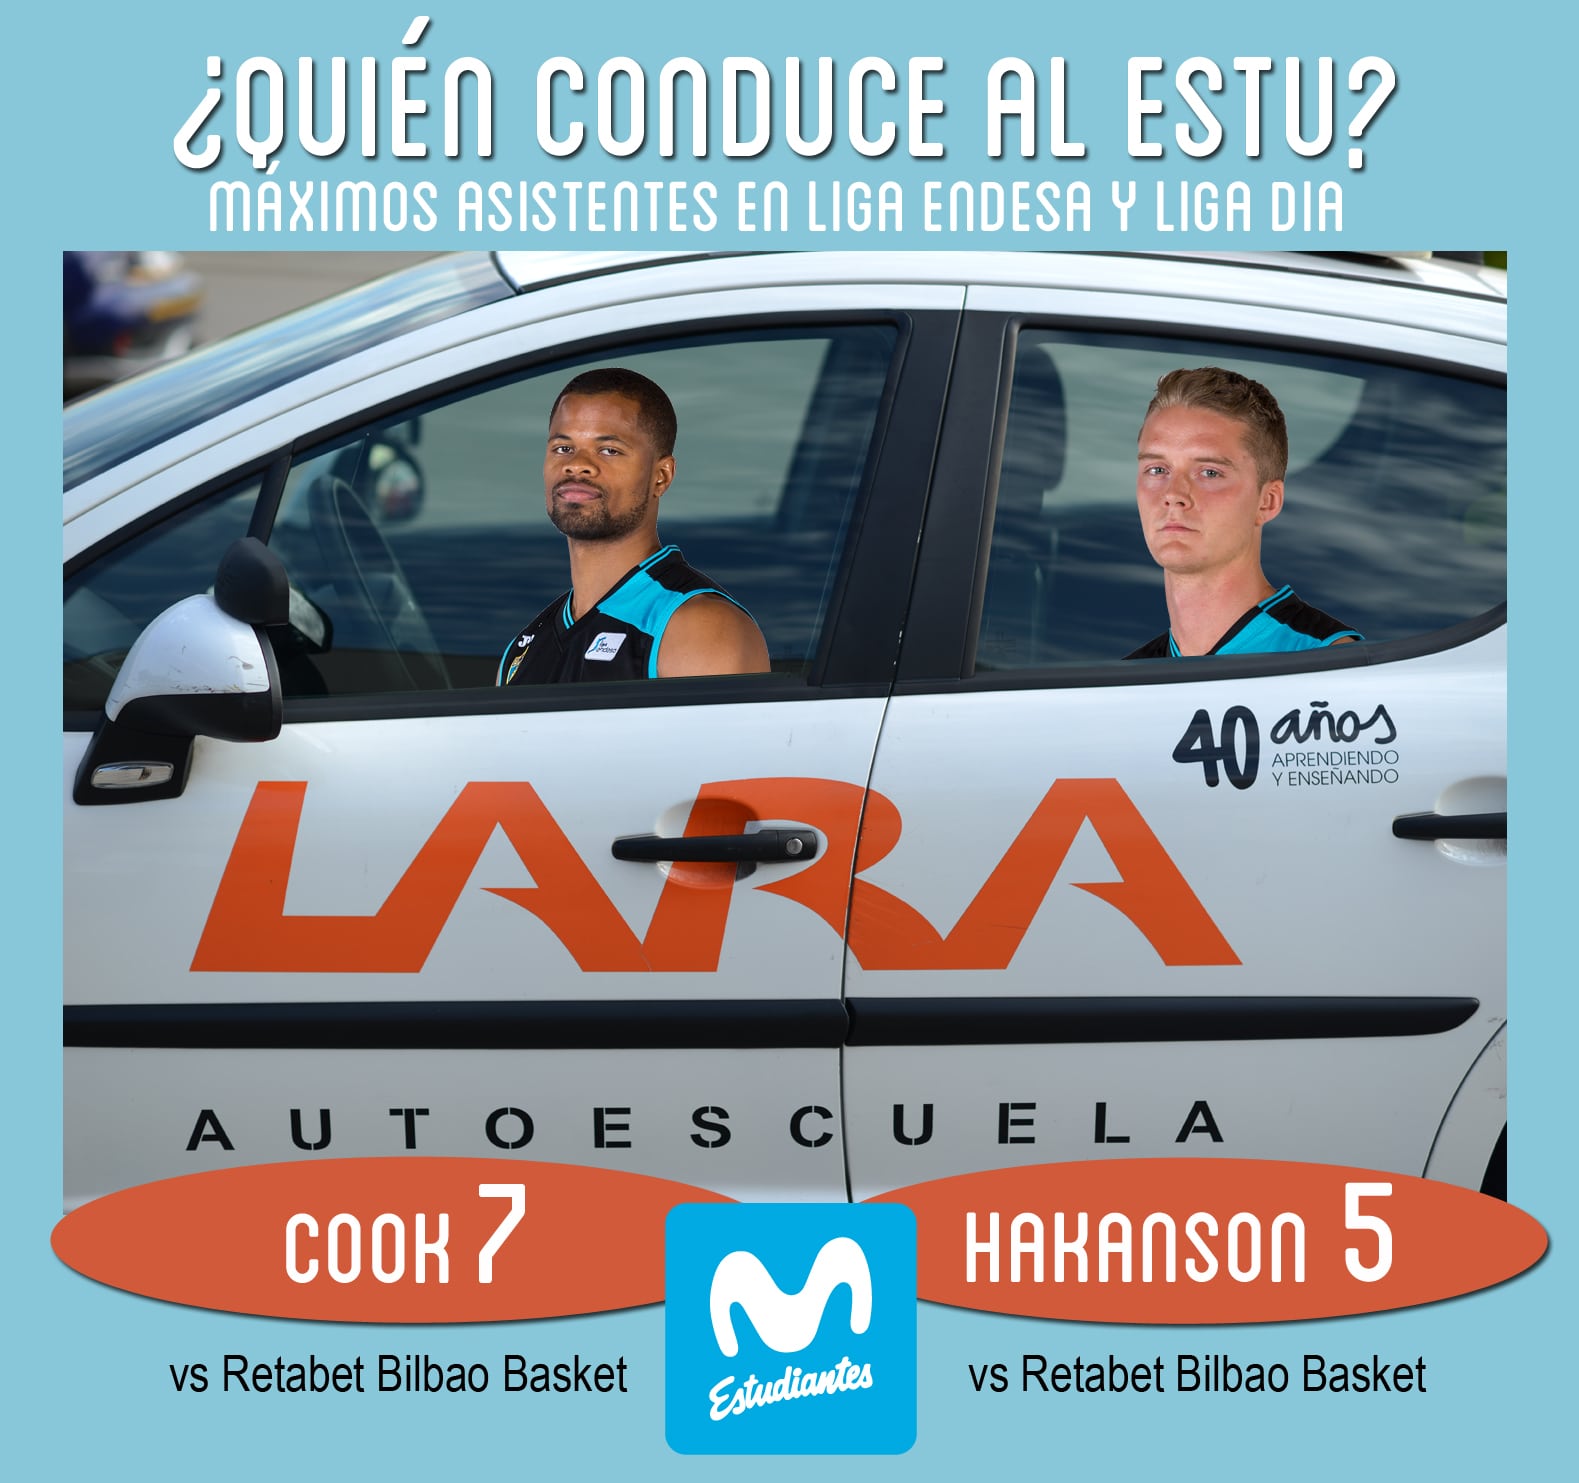 Conductores Autoescuela Lara: Omar Cook y Ludde Hakanson